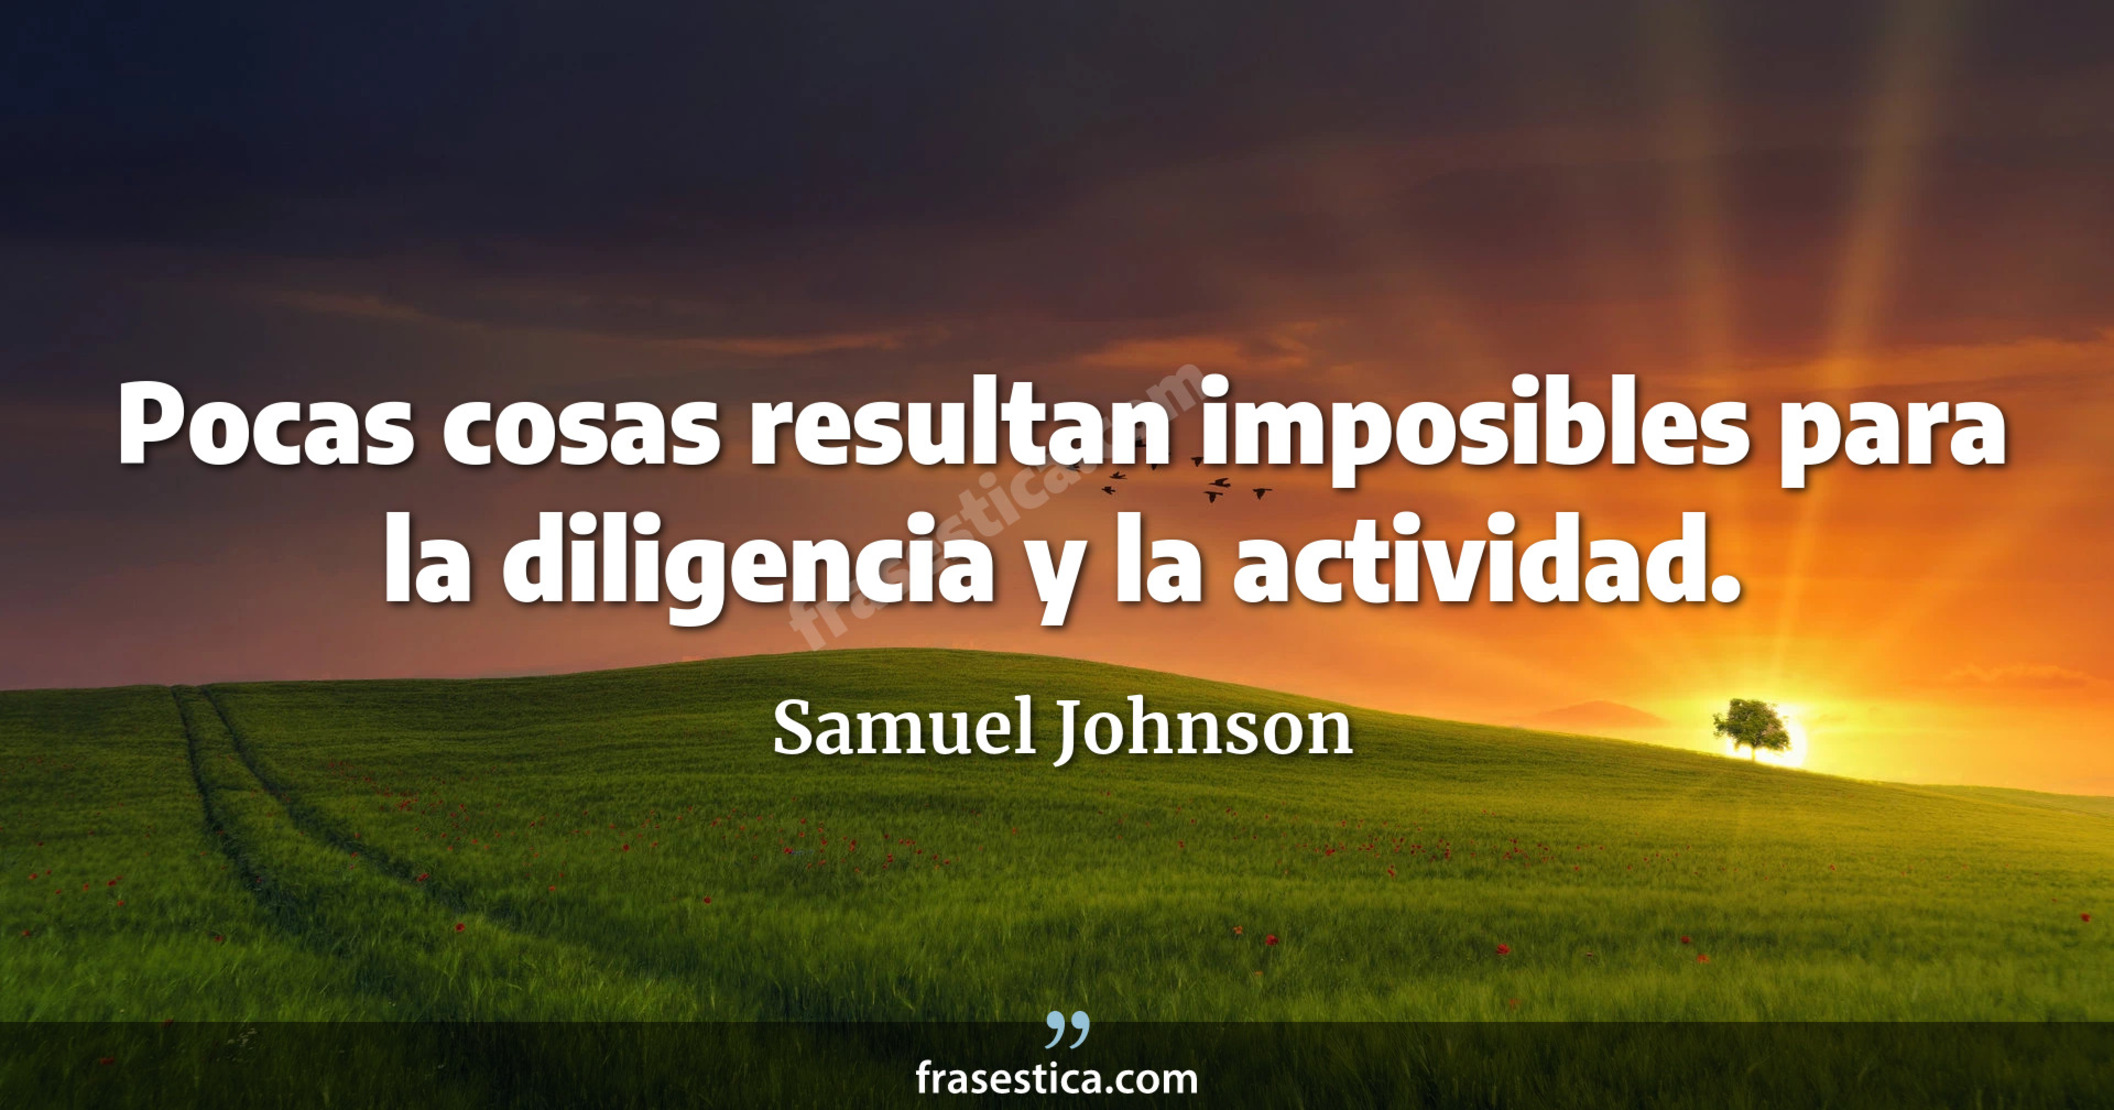 Pocas cosas resultan imposibles para la diligencia y la actividad. - Samuel Johnson